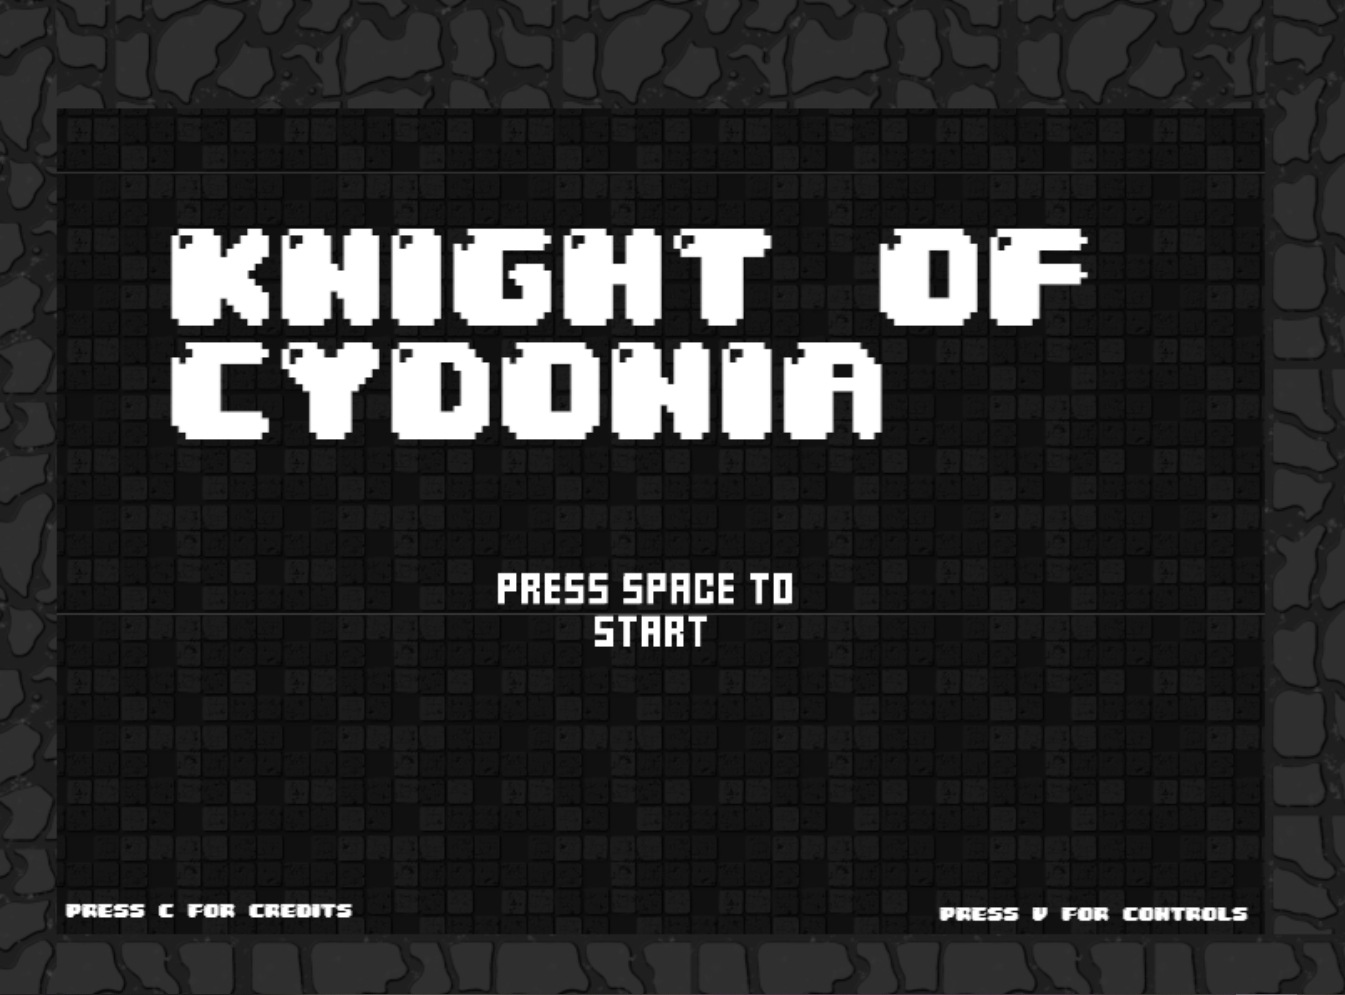 Knight of Cydonia